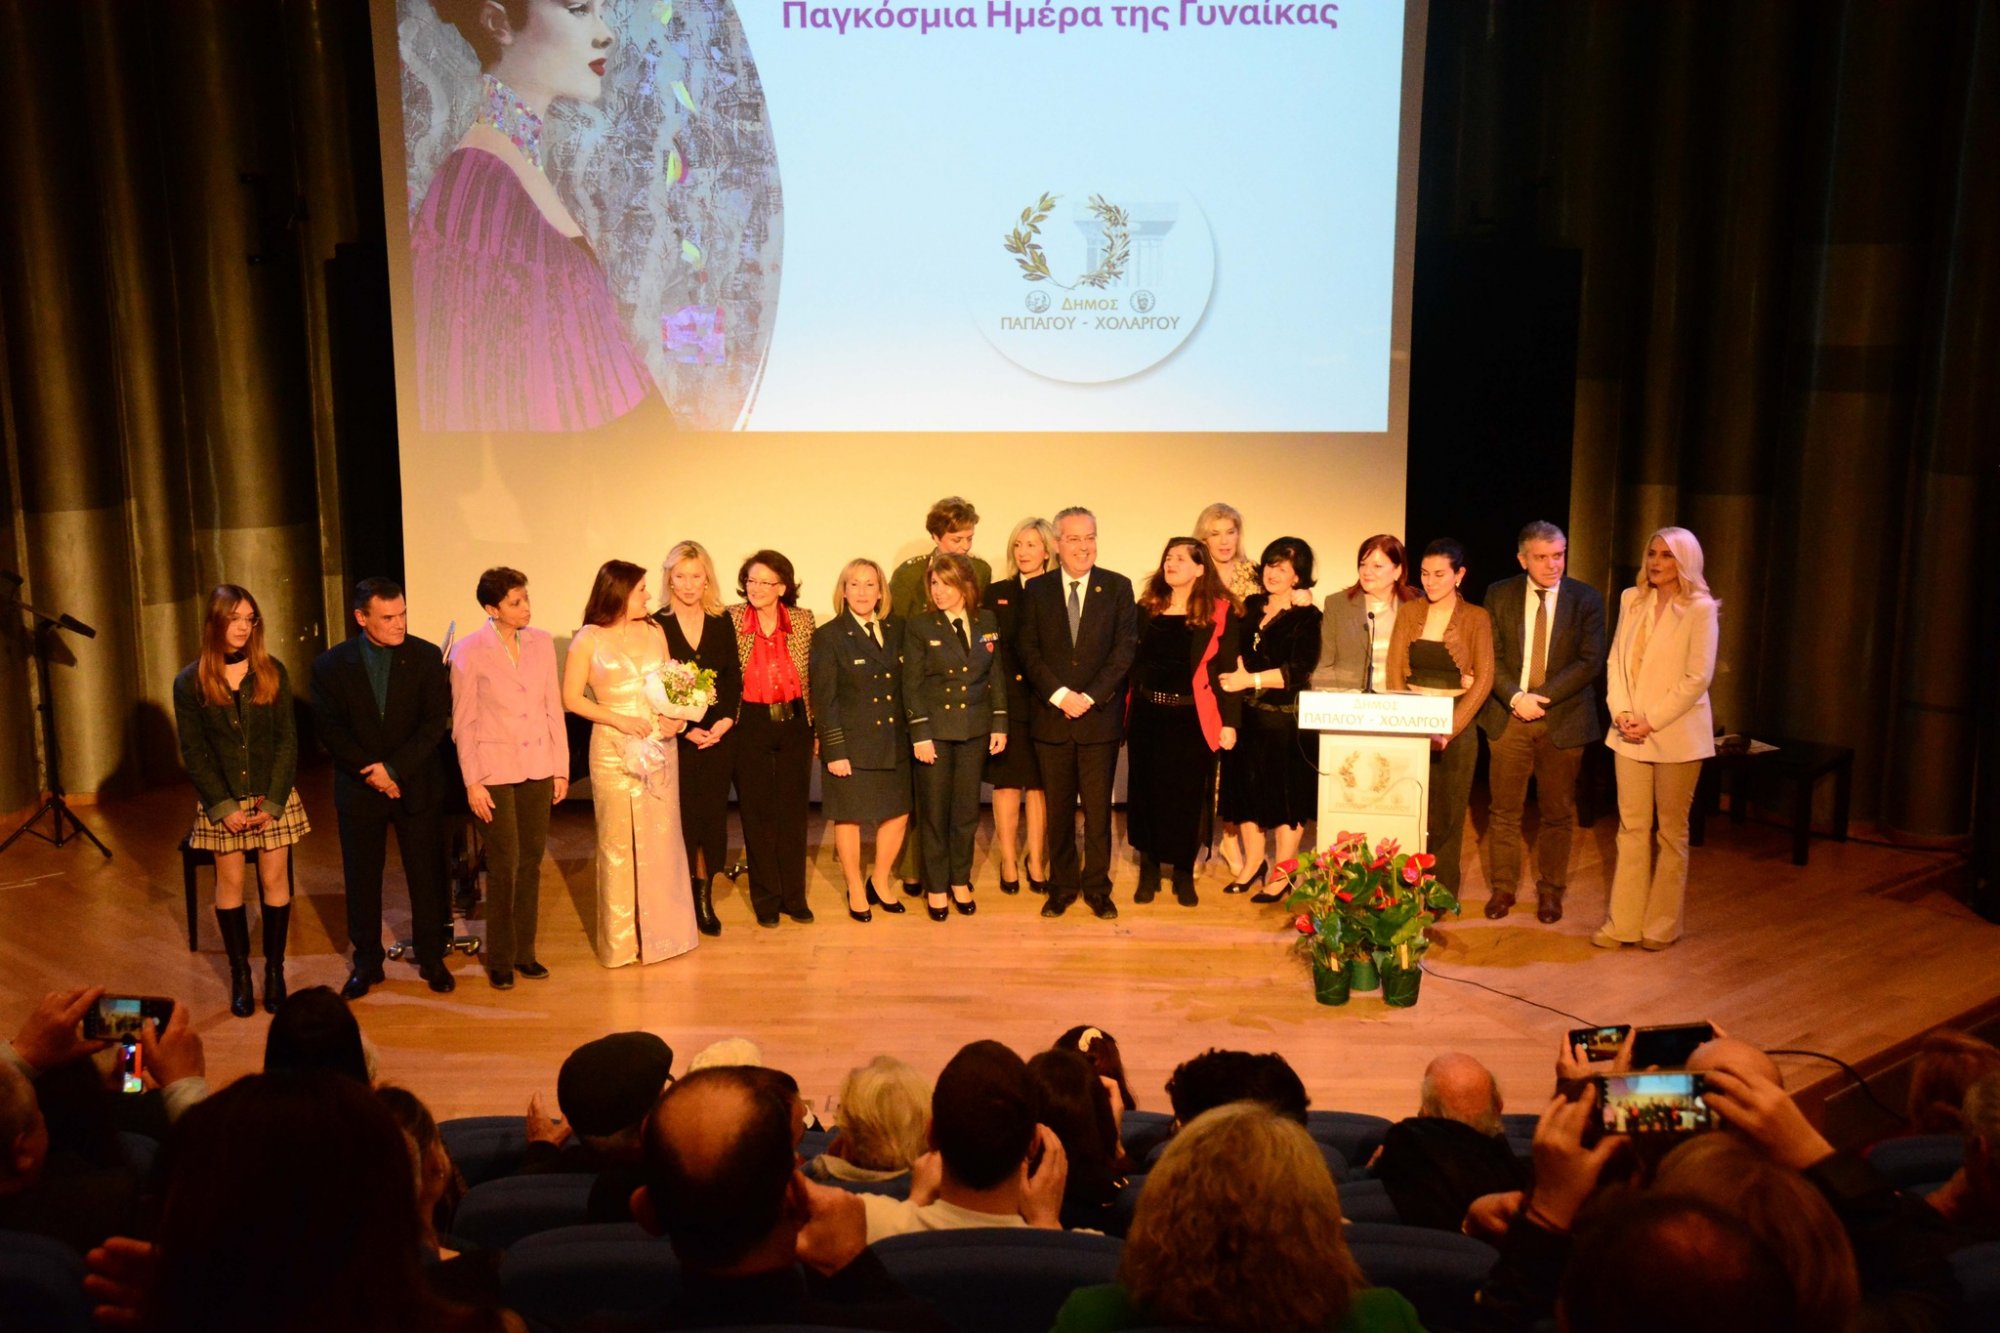 Ο Δήμος Παπάγου - Χολαργού τίμησε την Παγκόσμια Ημέρα της Γυναίκας